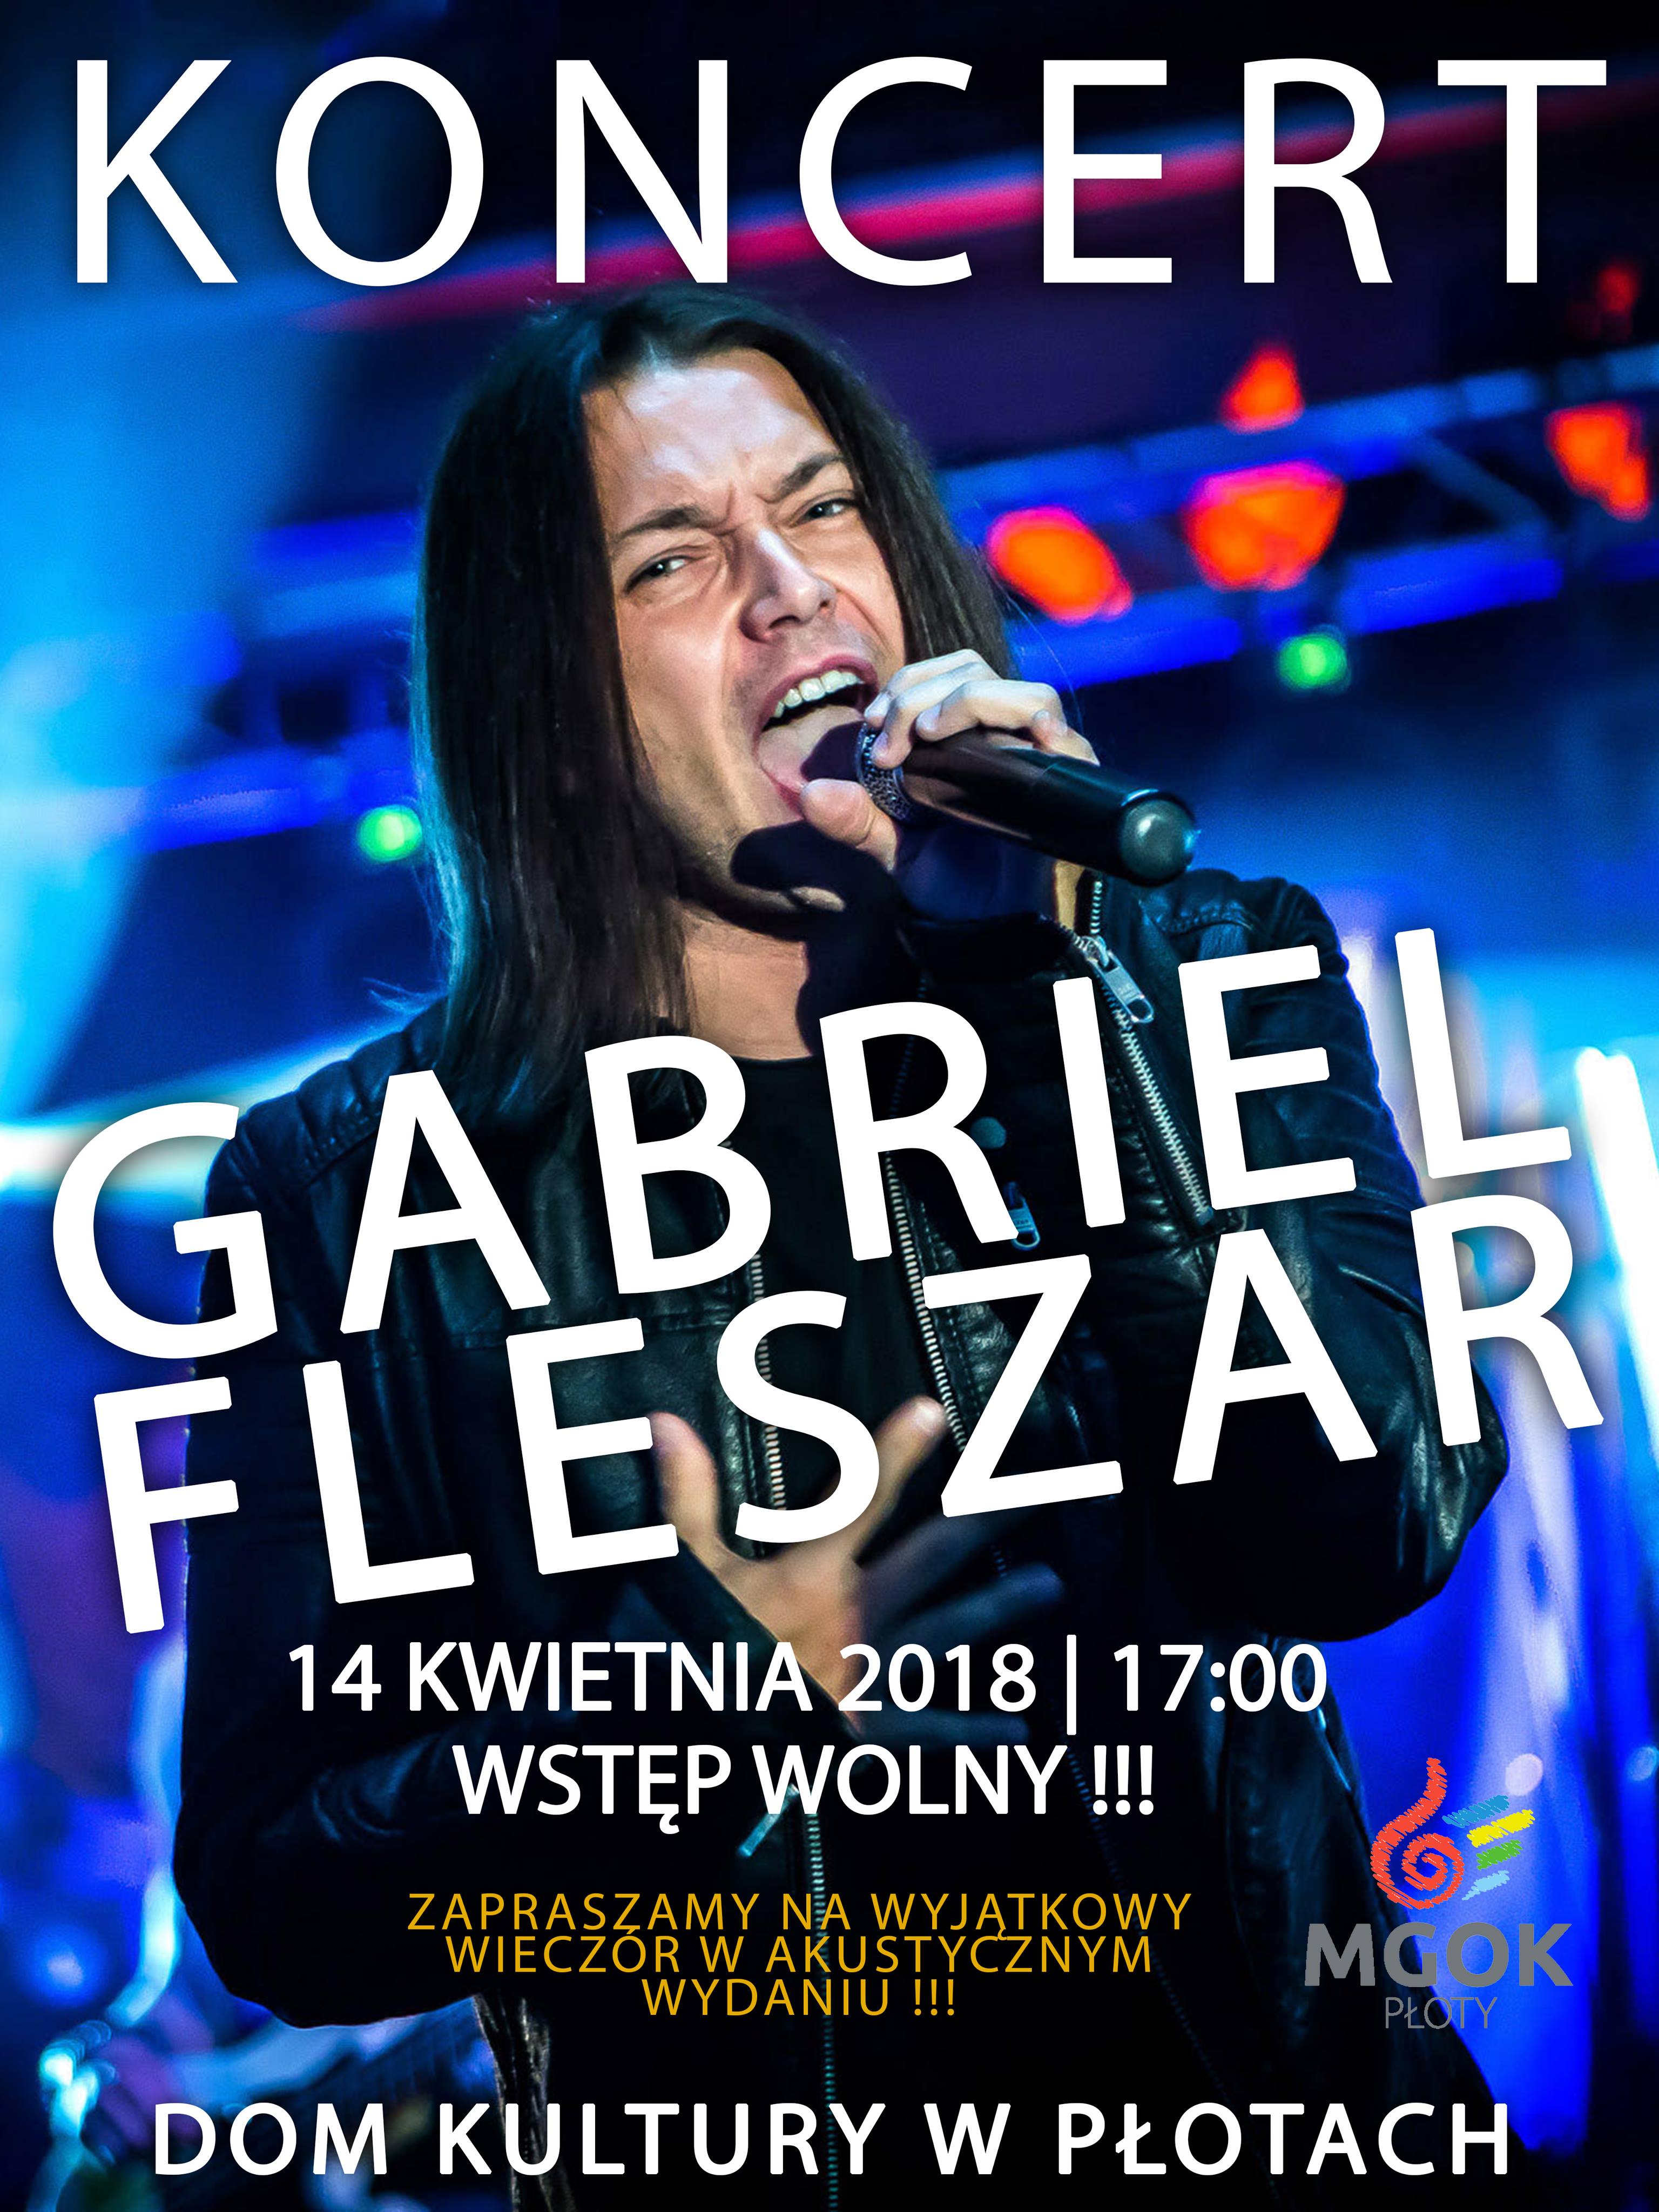 Gabriel Fleszar zagra w Domu Kultury w Płotach. koncert  w Płotach, kwiecień 2018